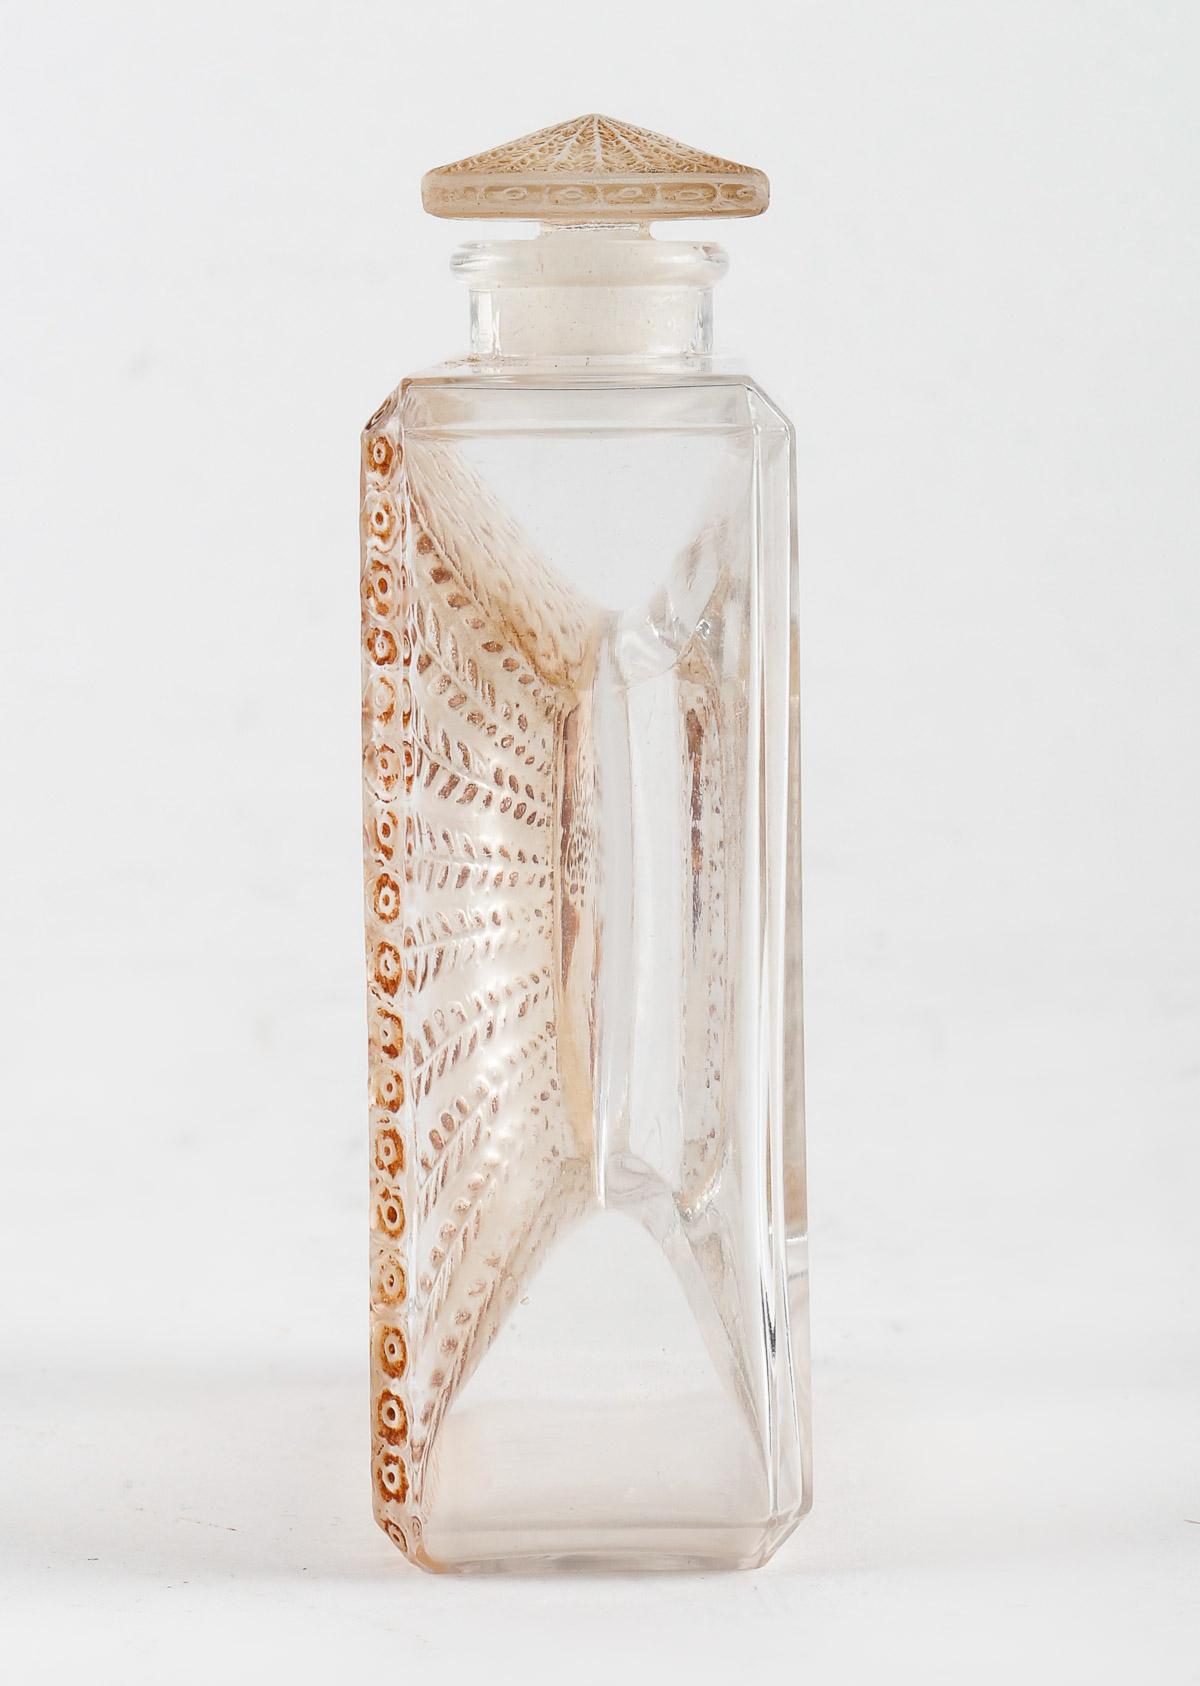 Art Deco 1925 Rene Lalique La Belle Saison Houbigant Perfume Bottle Sepia Stained Glass For Sale